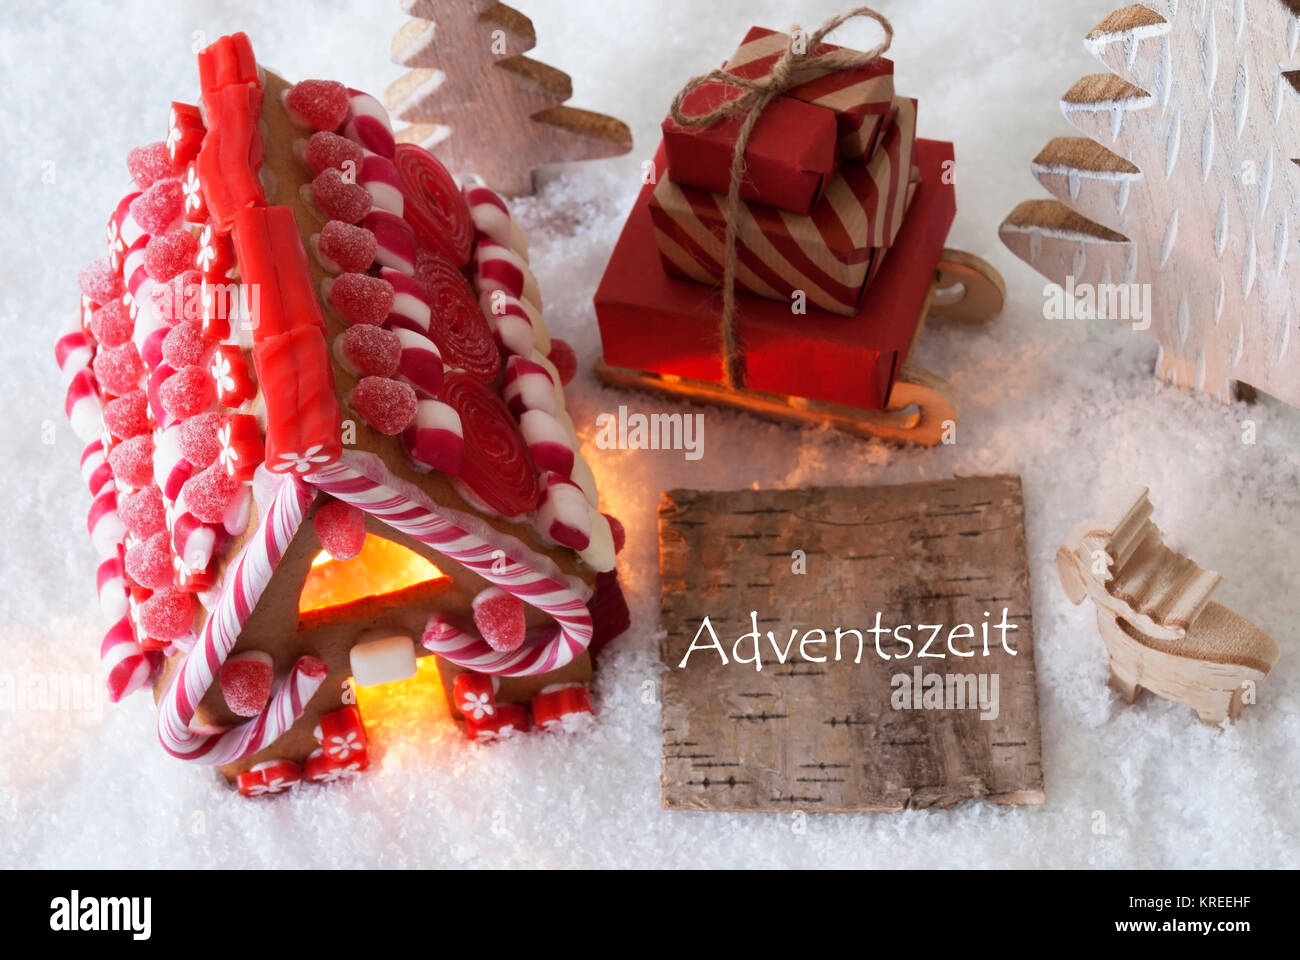 Etikett mit deutschem Text bedeutet Adventszeit Adventszeit. Lebkuchenhaus auf Schnee mit Weihnachten Dekoration wie Bäume und Elche. Schlitten mit Weihnachten Geschenke oder präsentiert. Stockfoto